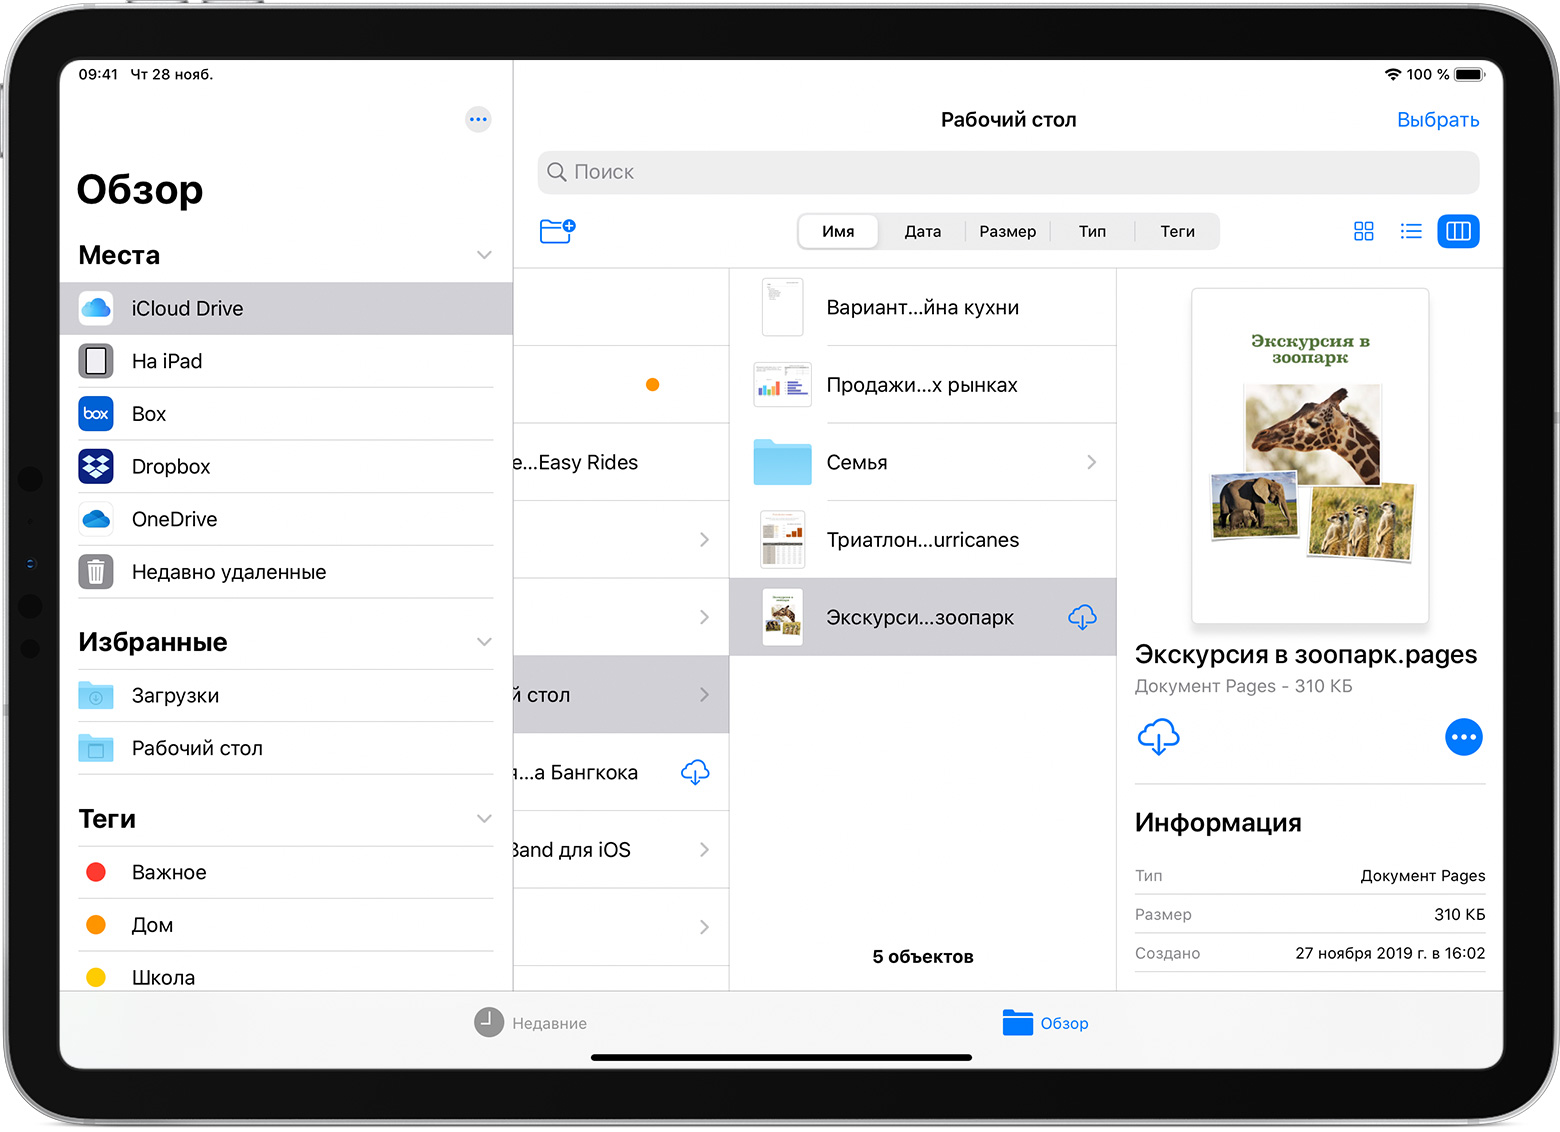 Управление файлами и папками — справка Acrobat для iOS